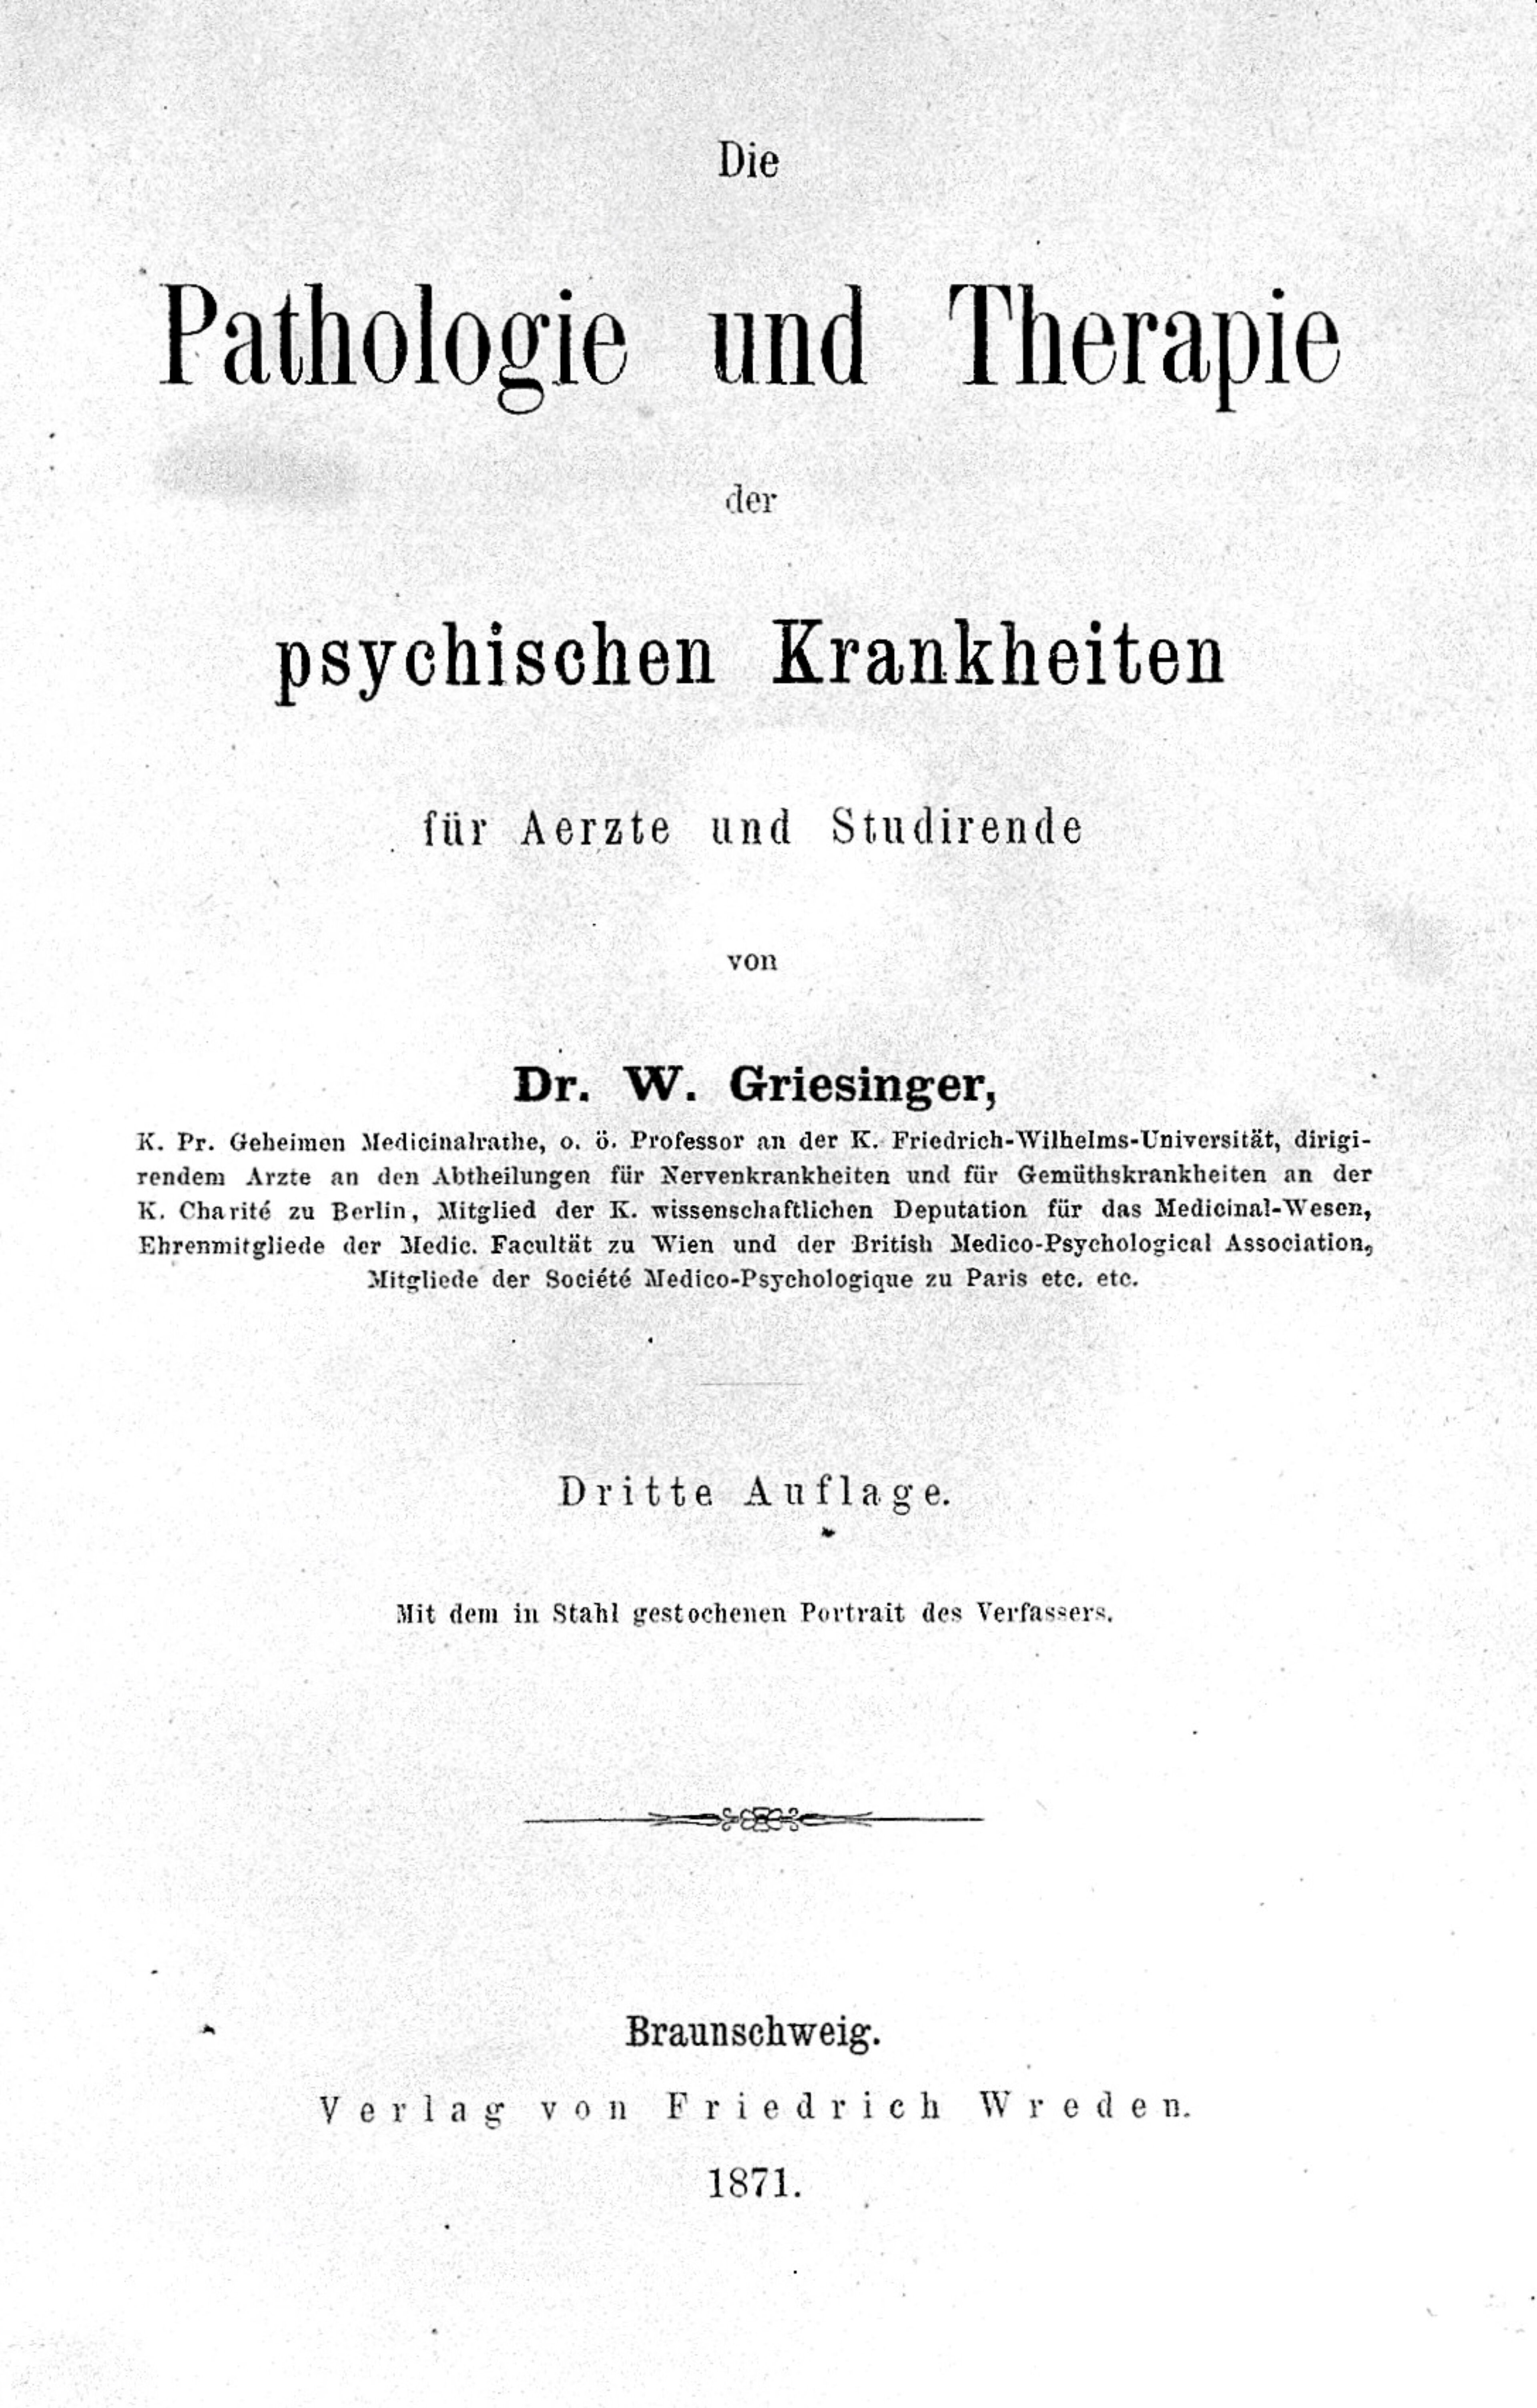 Die Pathologie und Therapie der psychischen Krankheiten : für Aerzte und Studirende / von W. Griesinger.